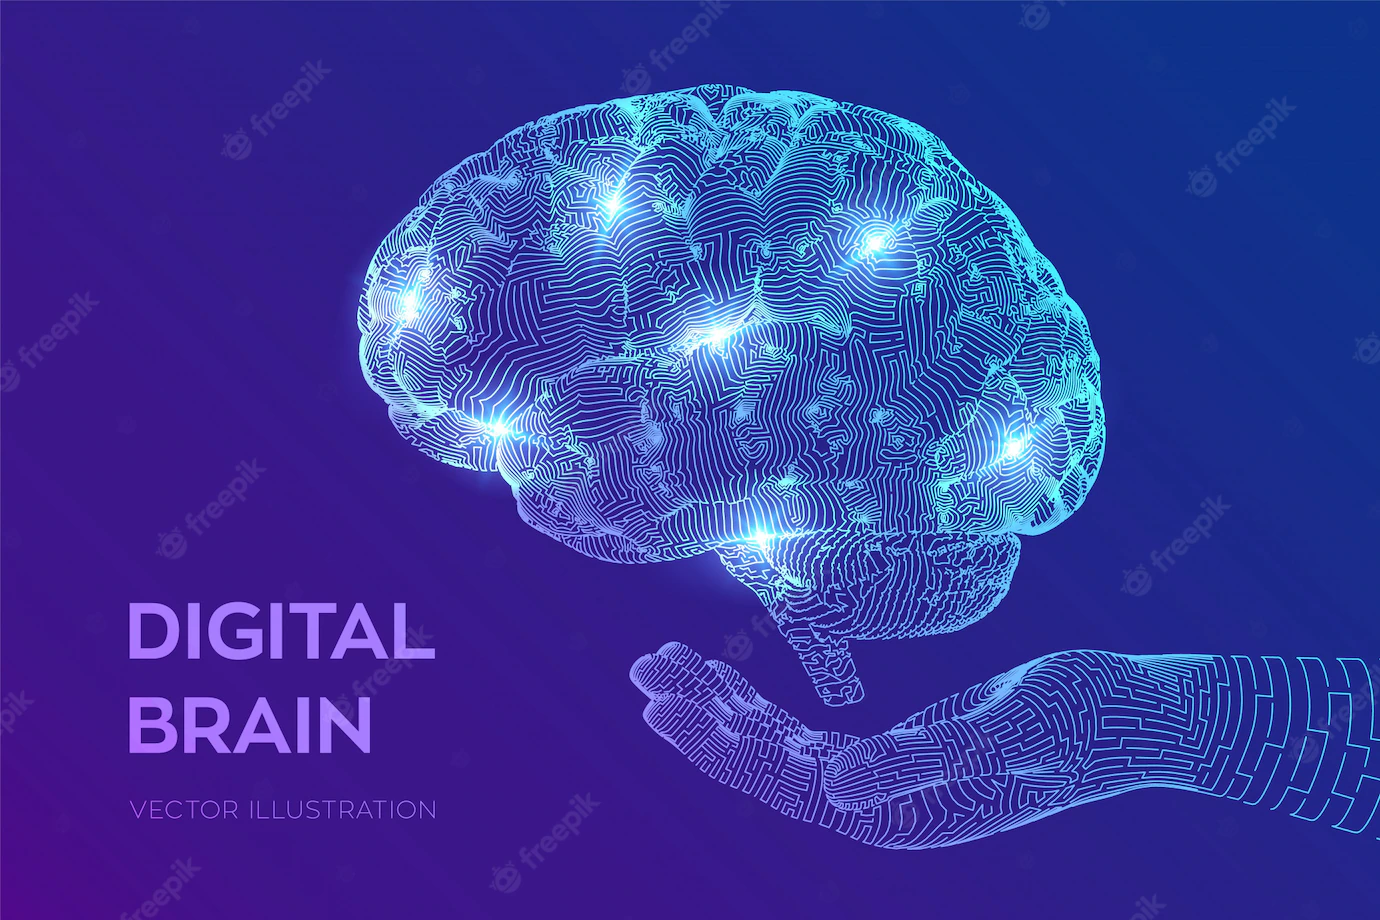 Brain Digital Brain Hand Neural Network 127544 838